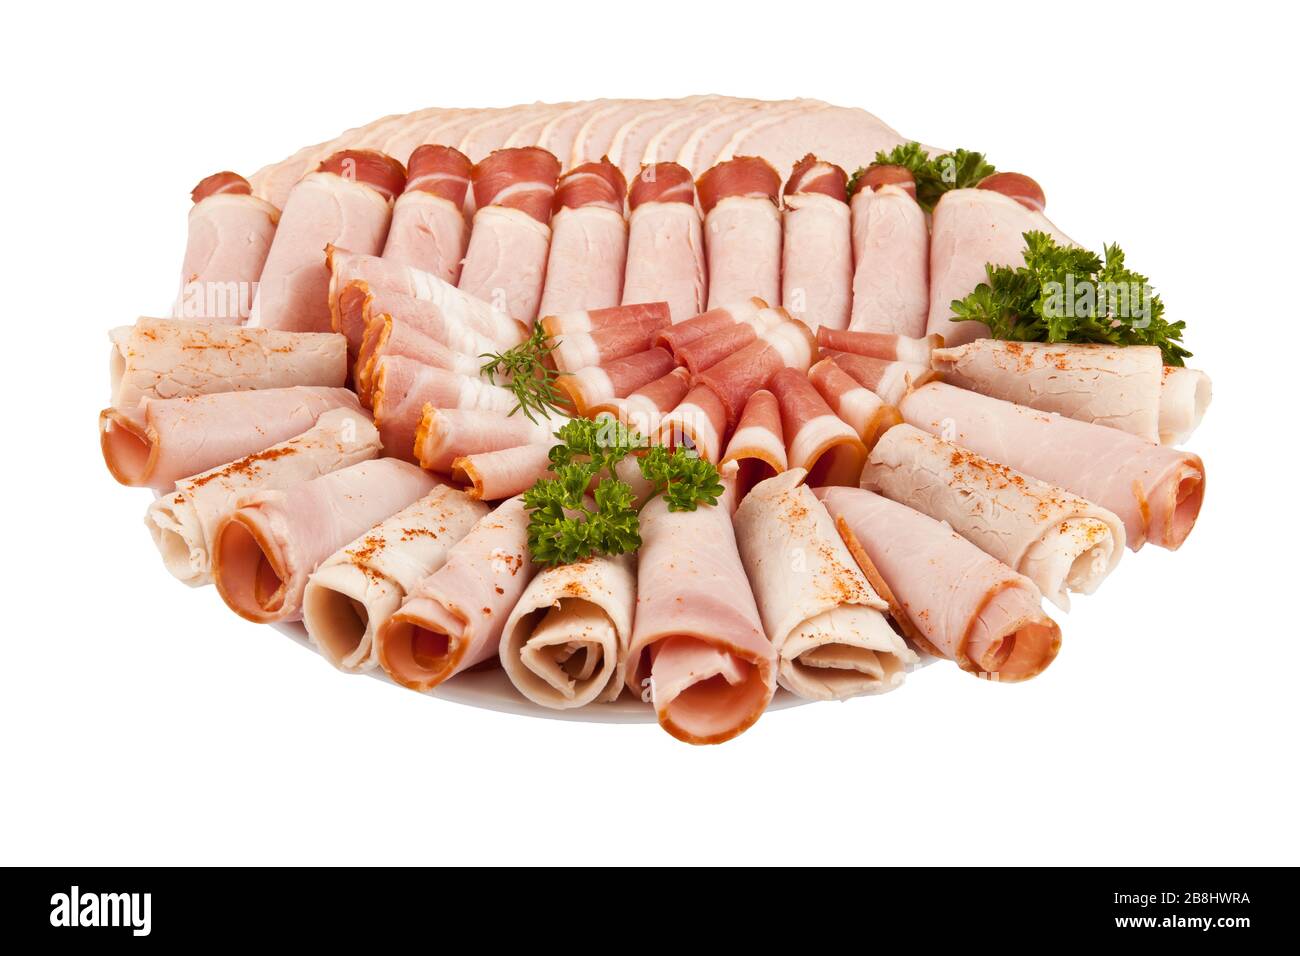 Salami-Schinken-Fleisch und mehr auf dem Teller isoliert auf dem weißen Hintergrund Stockfoto